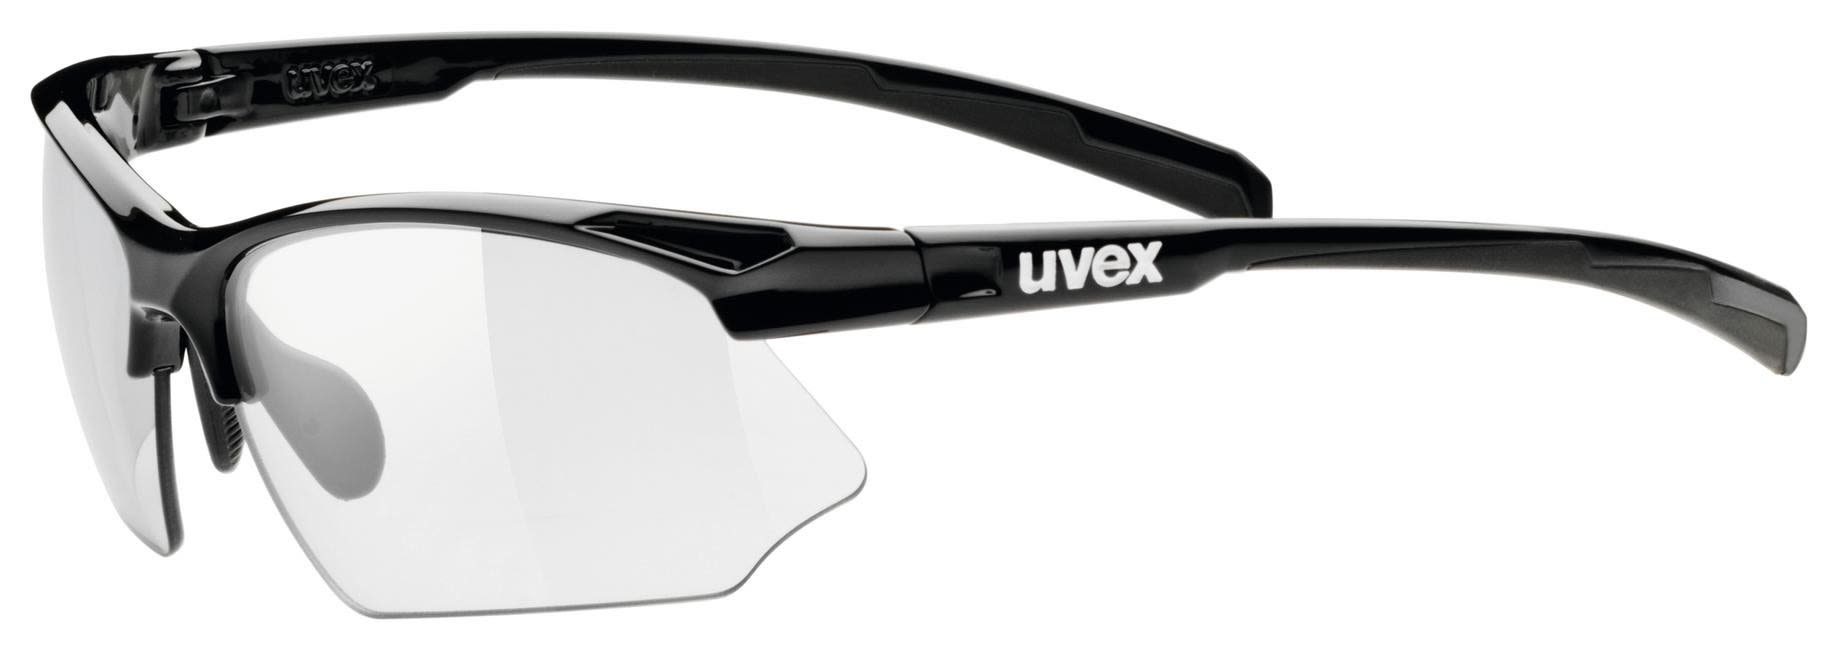 Uvex Sportbrille Uvex Sportstyle 802 Vario Accessoires Black - Variomatic Smoke Cat. 1-3